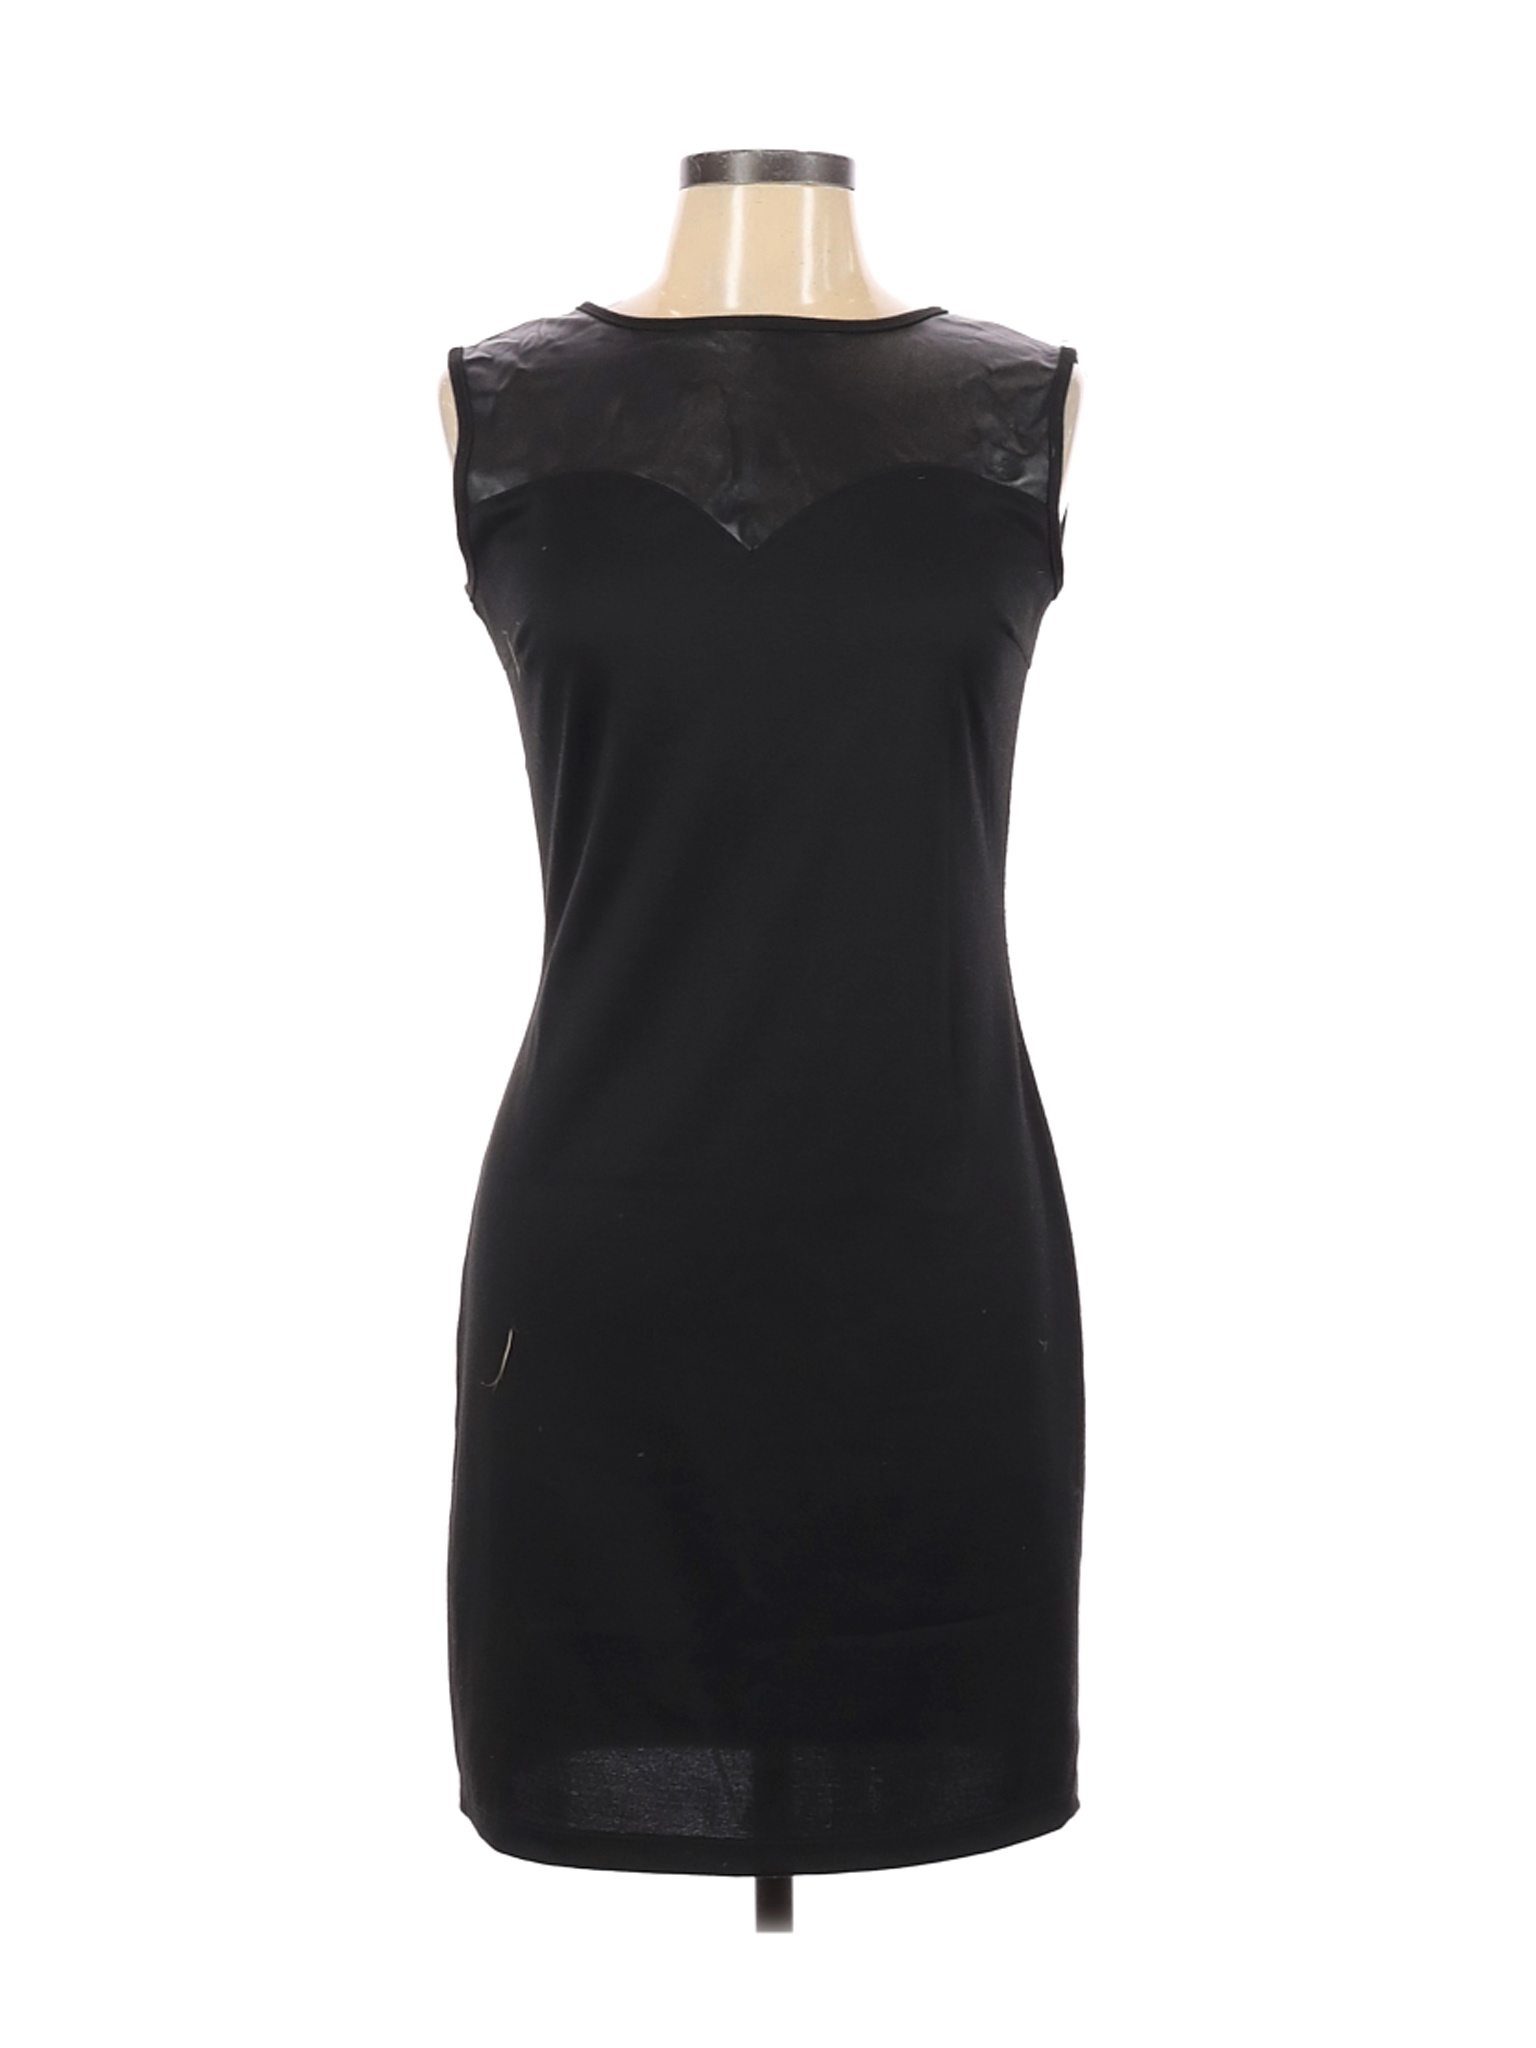 Heart 2 Heart Women Black Casual Dress L | eBay